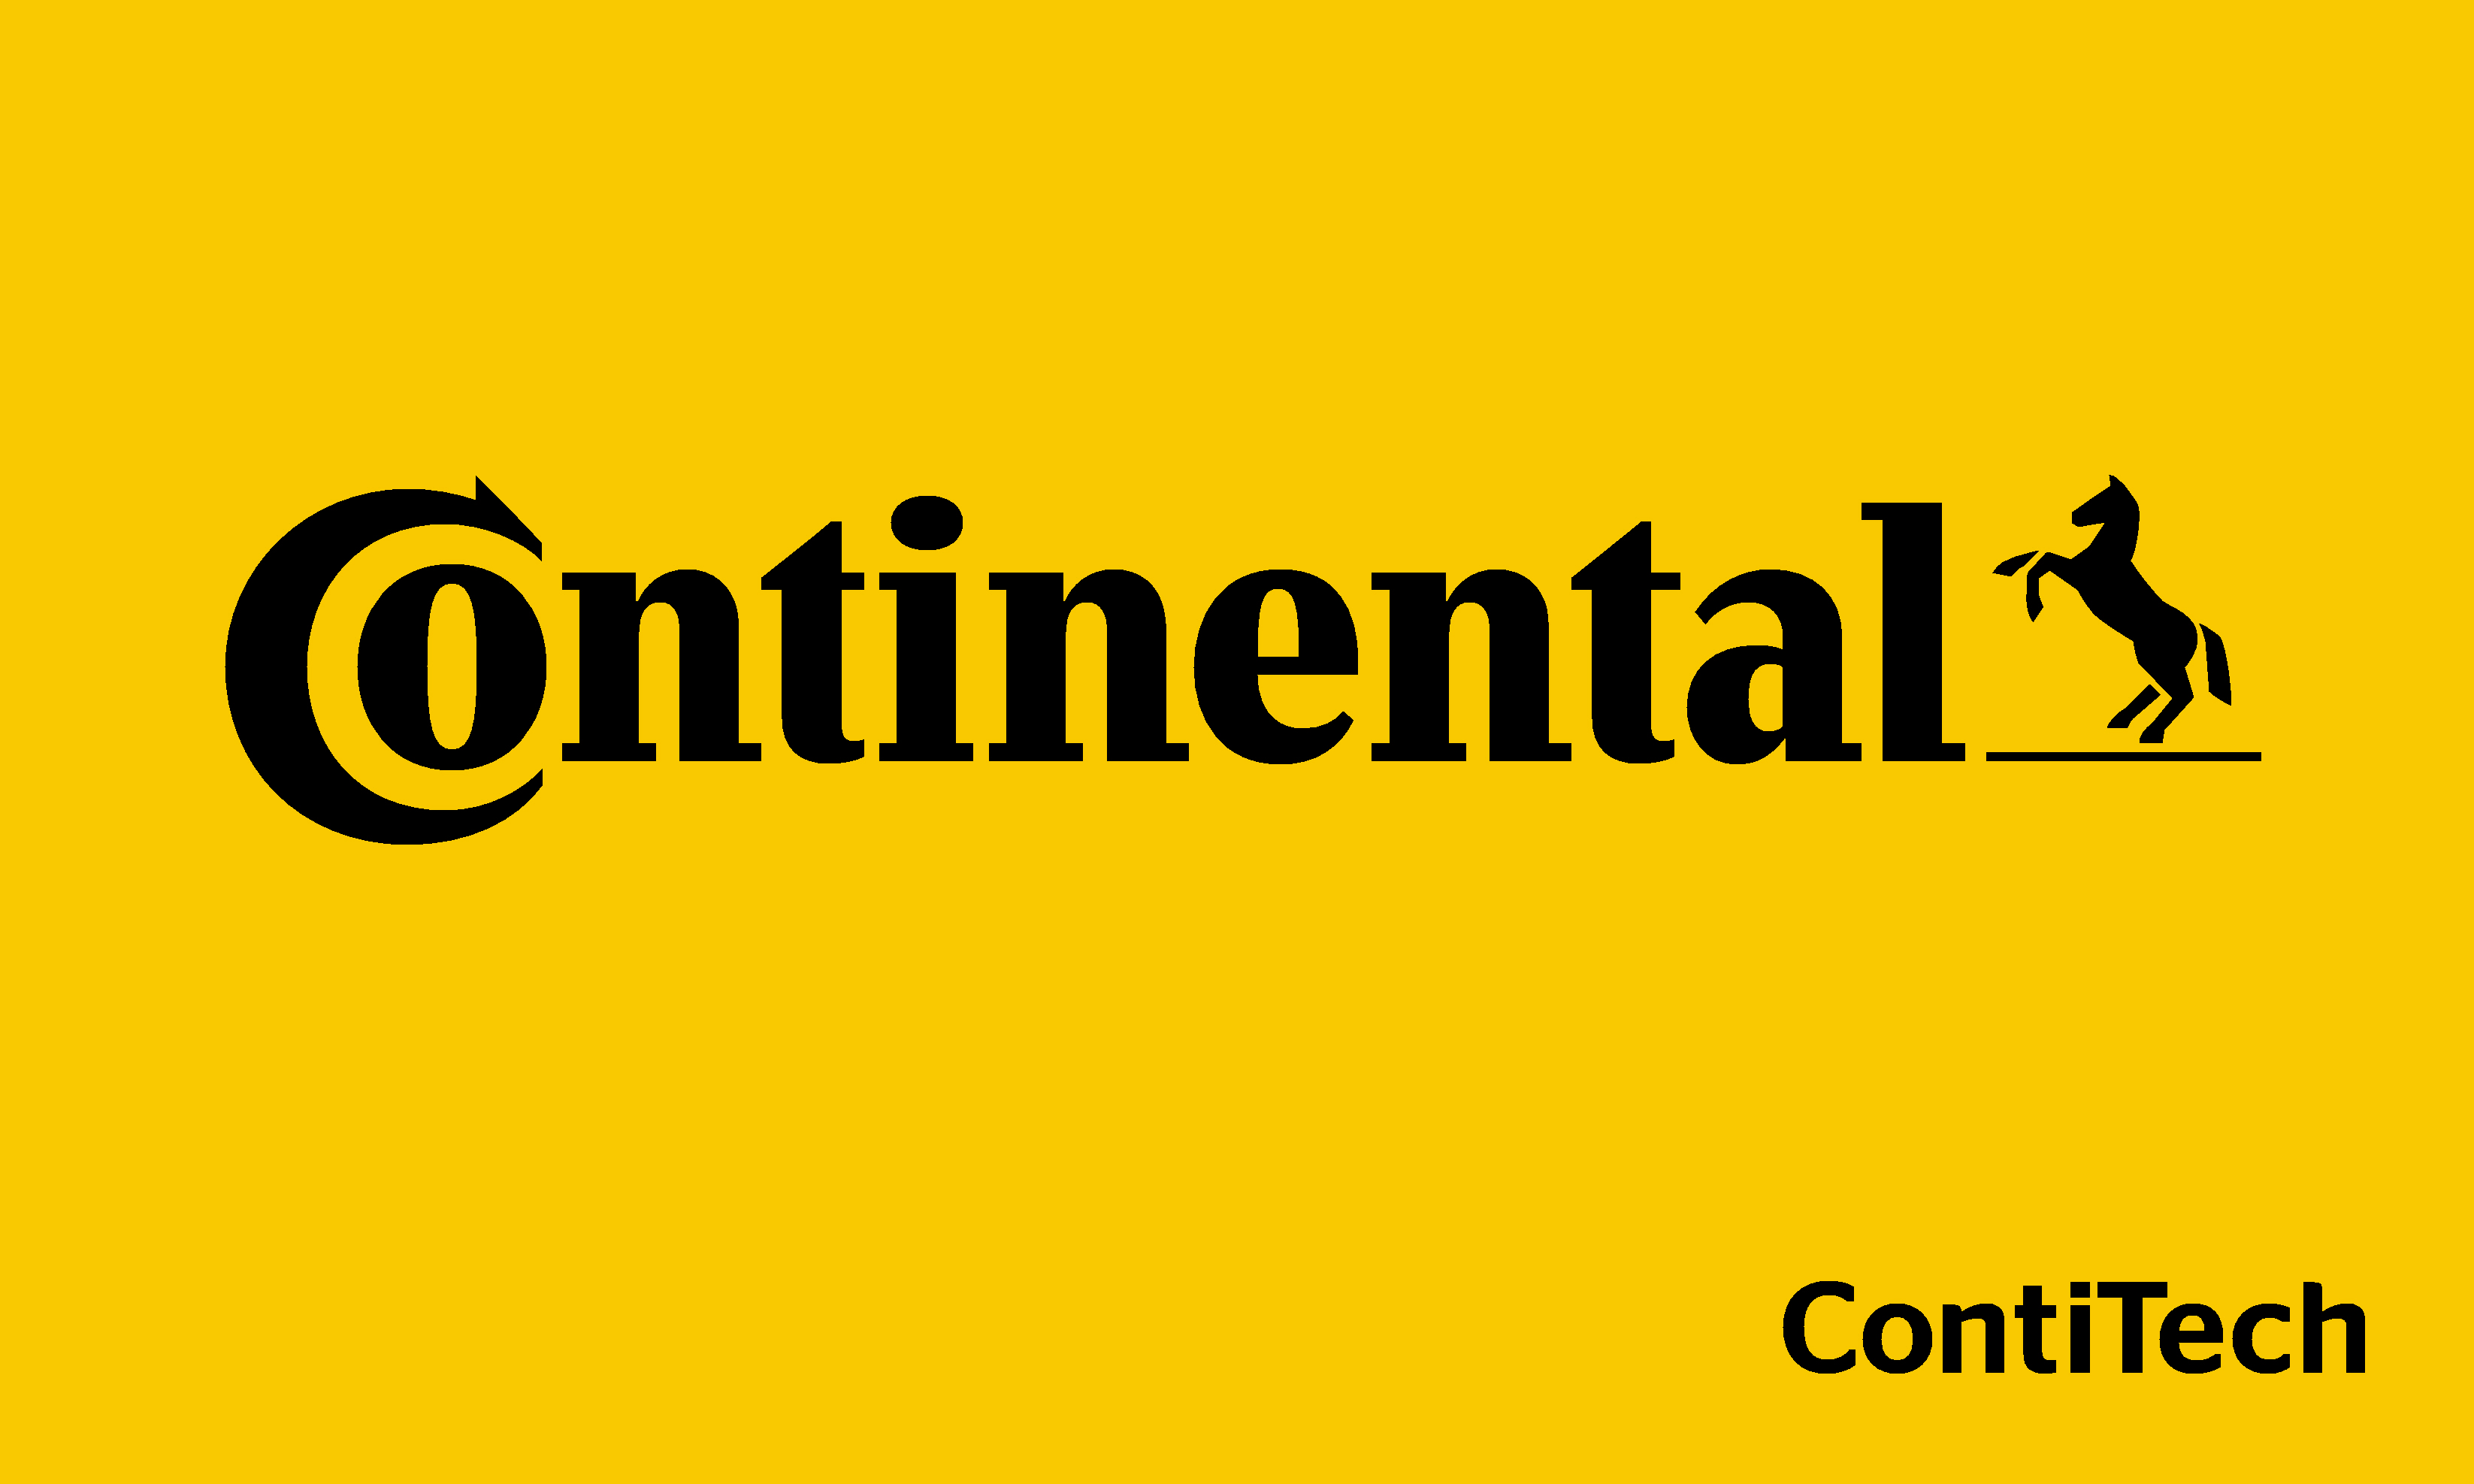 G. Continental (Nivel 2)